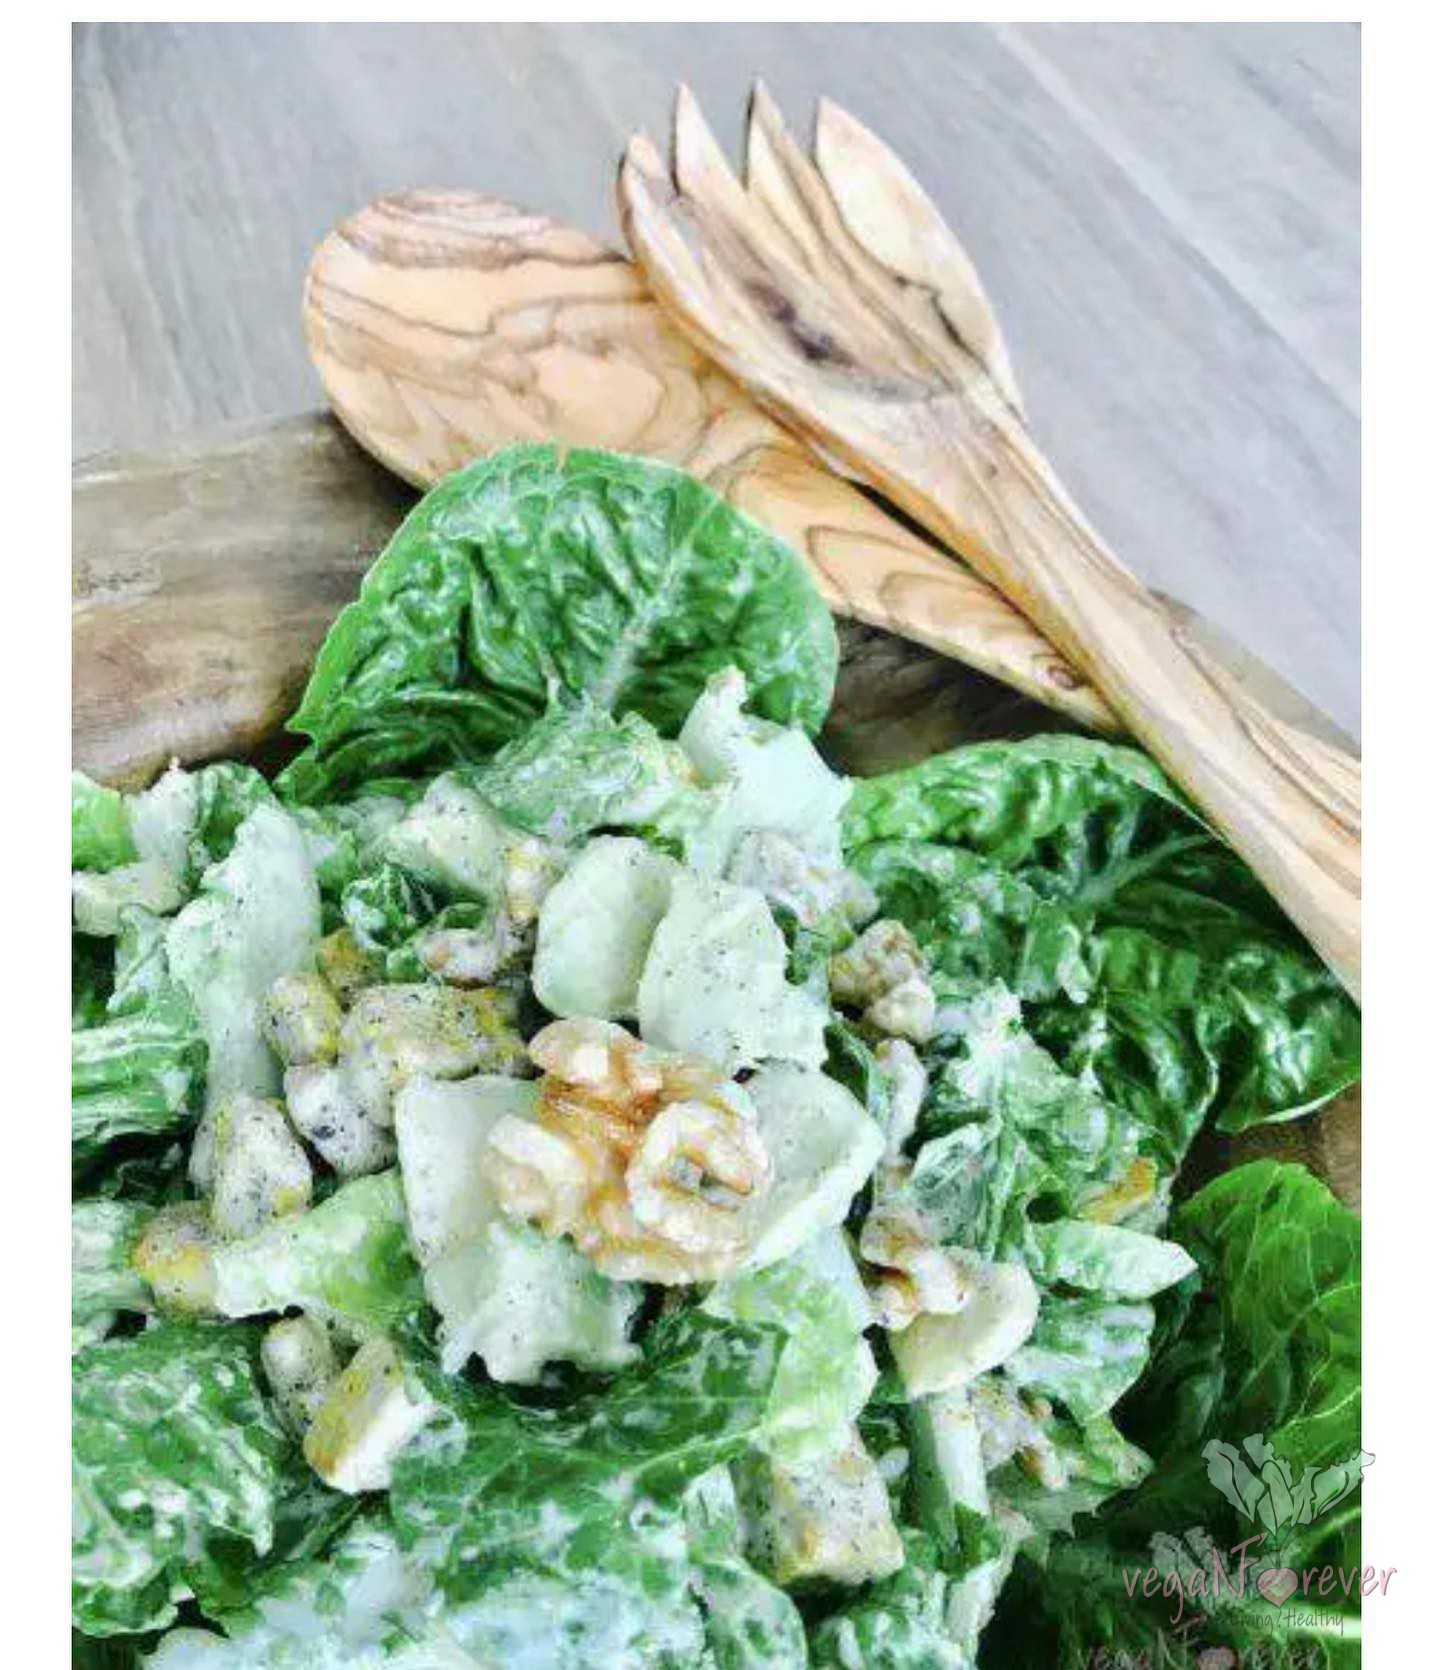 Vegan Ceasar‘s Salad. De zon ☀️ schijnt, en ik heb meteen trek in iets lichts, maar goed voedzaam 💪 dus hier een heerlijk gerecht voor de lunch of diner 😋😋😋 link in de web : https://veganforever.nl/vegan-caesars-salad/ 🥗🥗🥗 #vegan #vegansalad #veganrecipes #plantbased #pflanzlicheernährung #salatrezept #plantaardig #salade #healthyfood #healthyrecipe #healthysalad #fitnessvegan #fitnessrecipes #veganfortheplanet #veganforhealth #veganfortheanimals #vegansincemyhearttransplantation